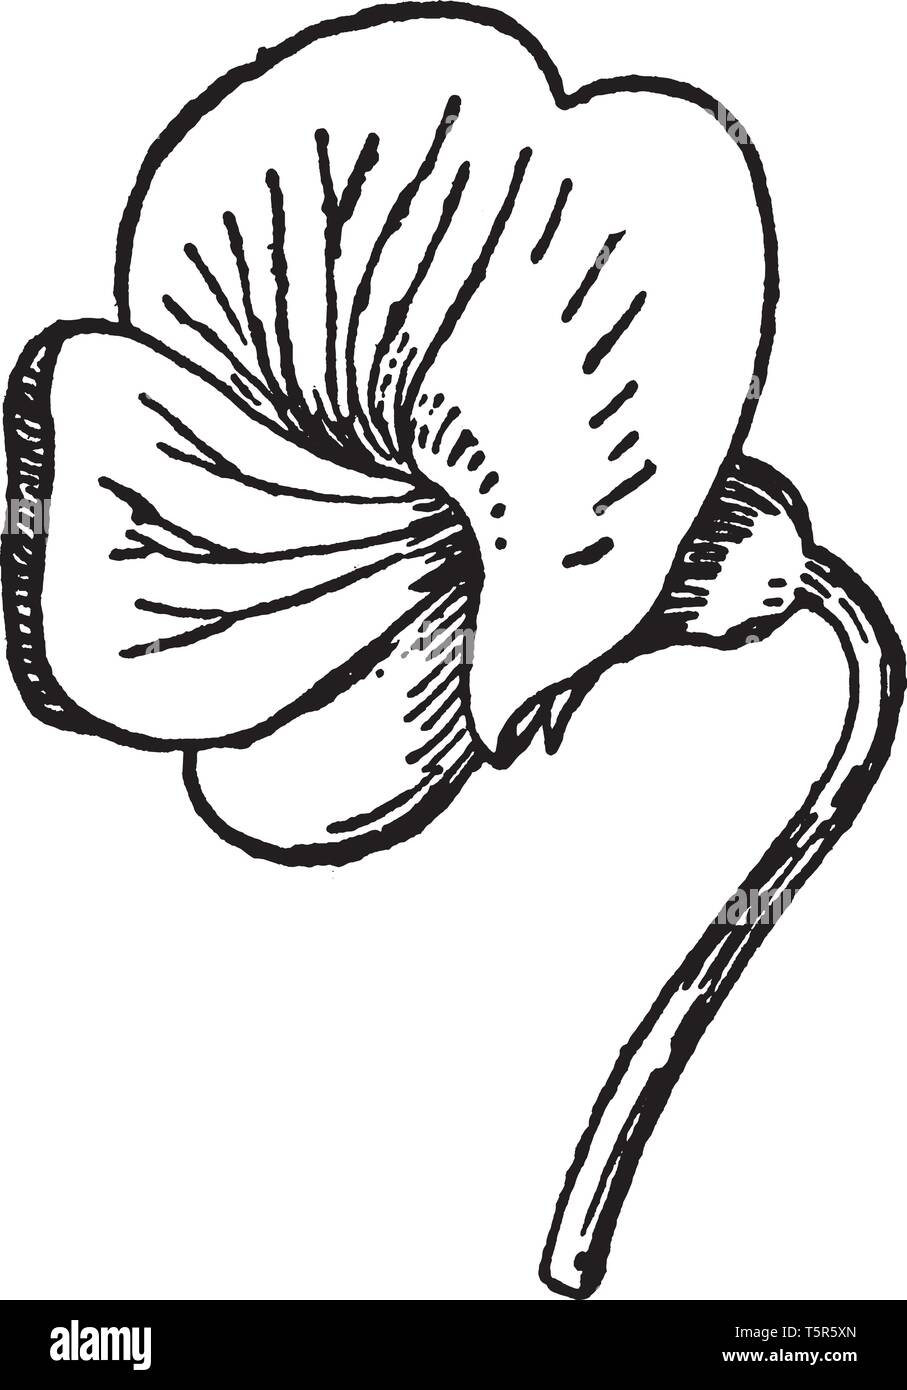 Die klare, blaue Farbe der Blume. Großen oberen Blütenblatt und zwei unteren Blütenblätter oft verschmolzen miteinander, vintage Strichzeichnung oder Gravur Abbildung. Stock Vektor